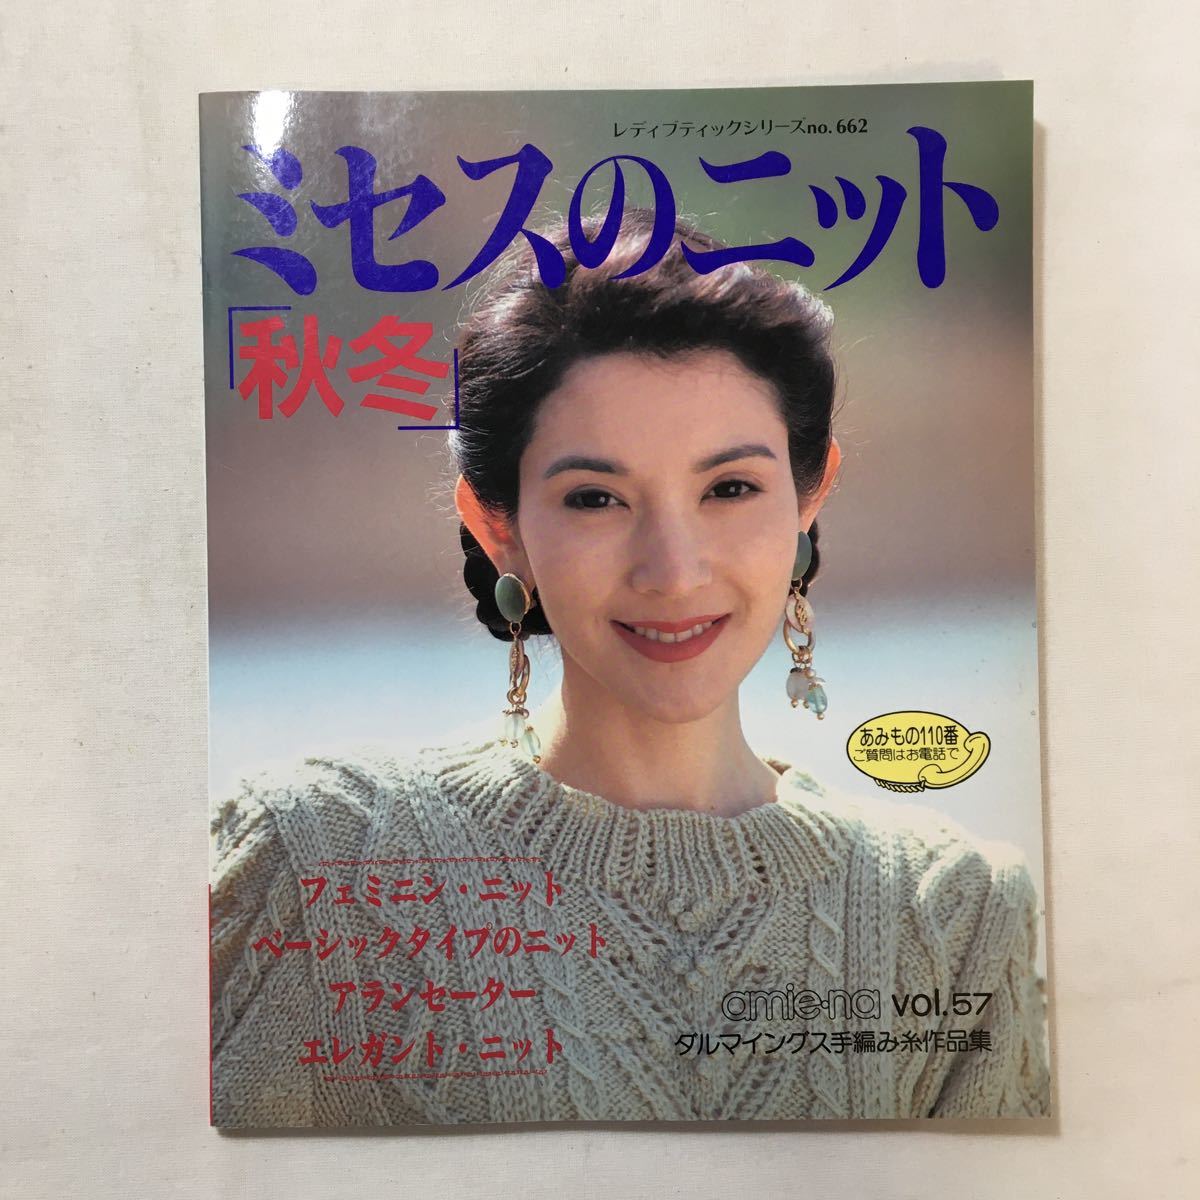 zaa-276♪ミセスのニット 『秋冬 』 レディブティックシリーズno662　1992/10/25